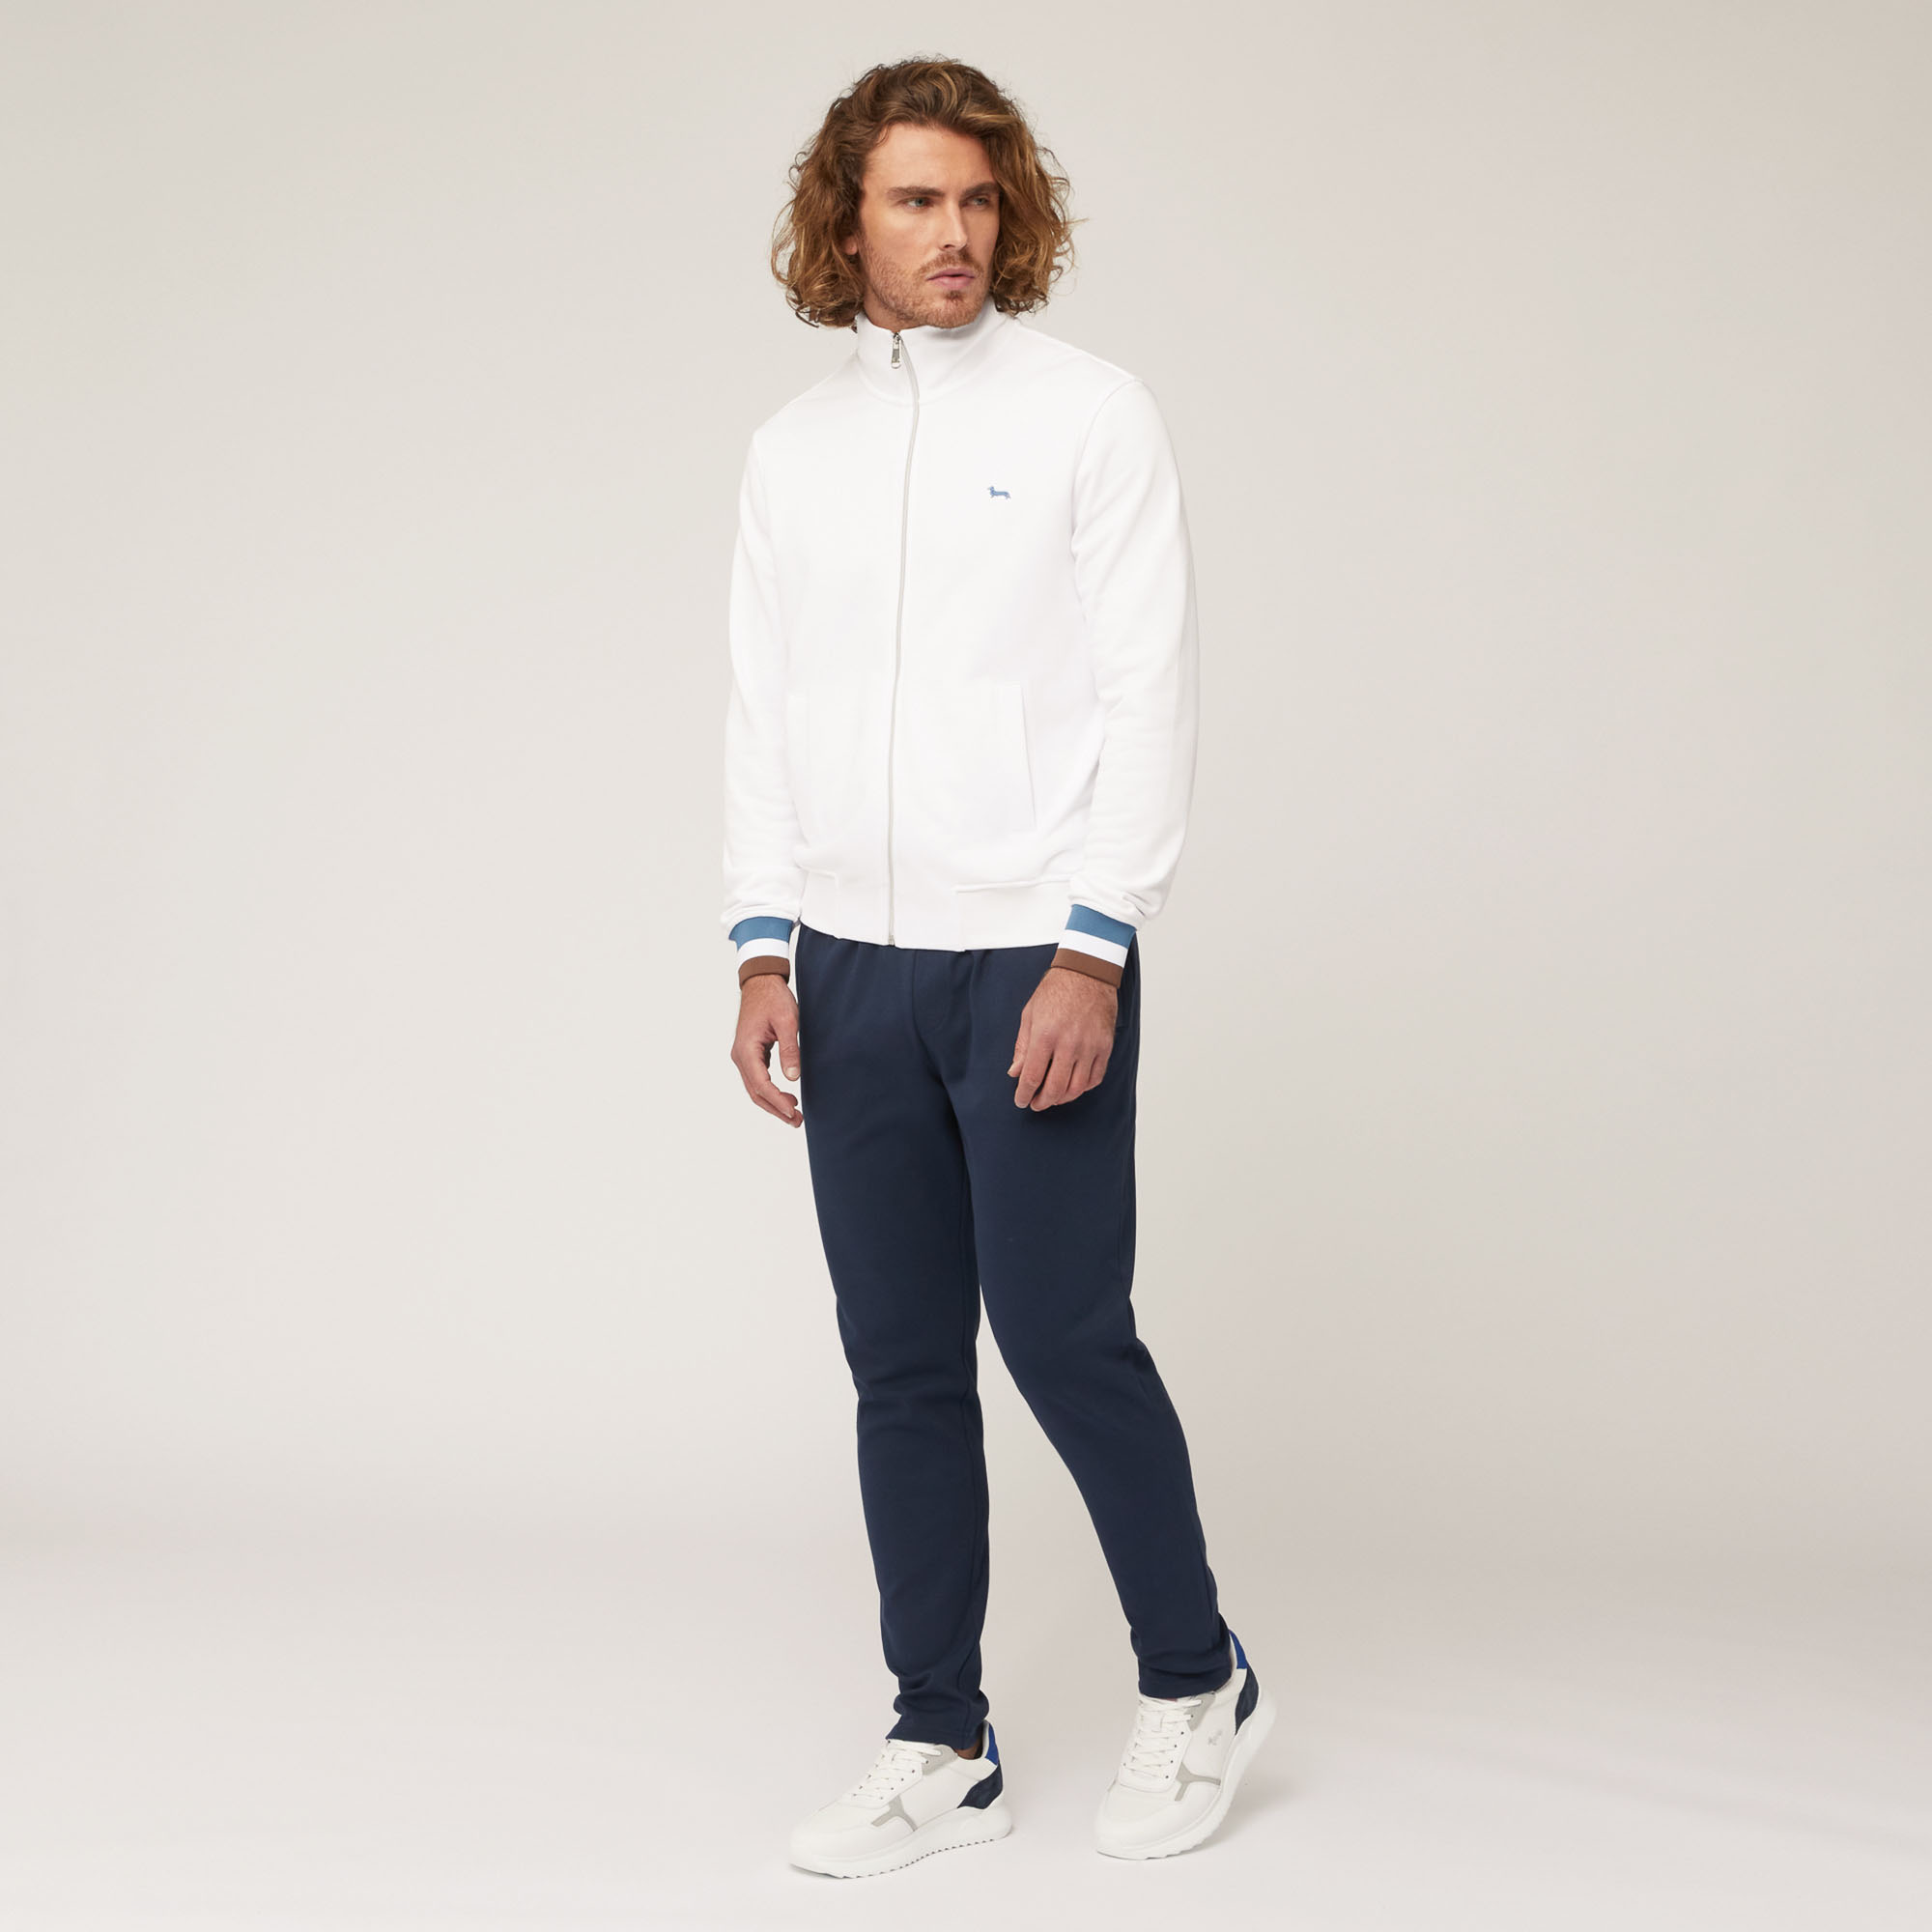 Sweatshirt aus Baumwolle mit durchgehendem Reißverschluss und gestreiften Details, Weiß, large image number 3